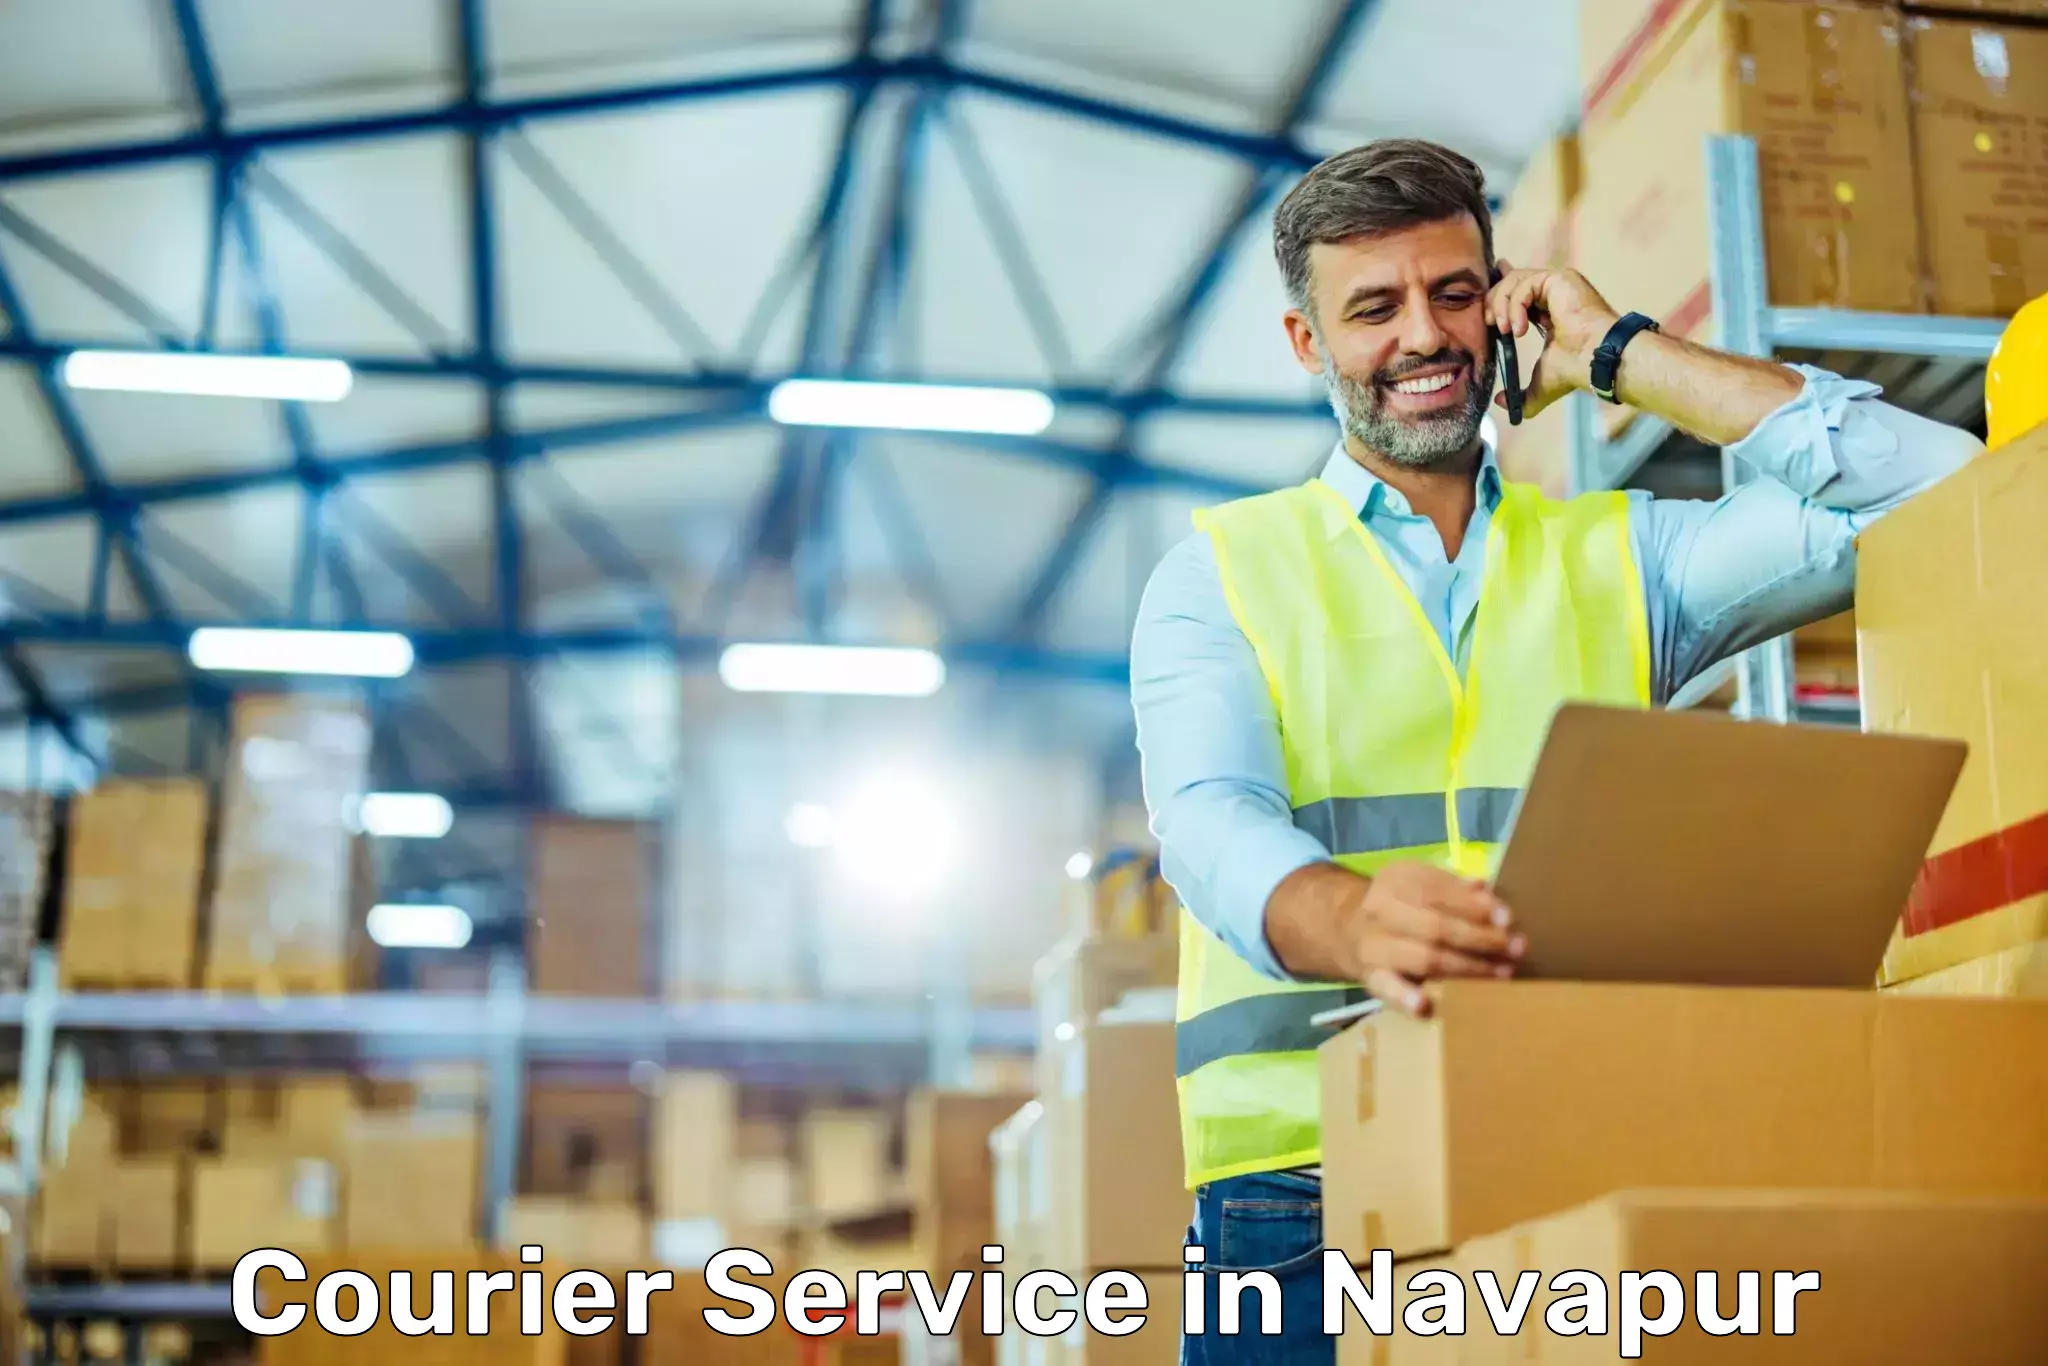 Express logistics service in Navapur